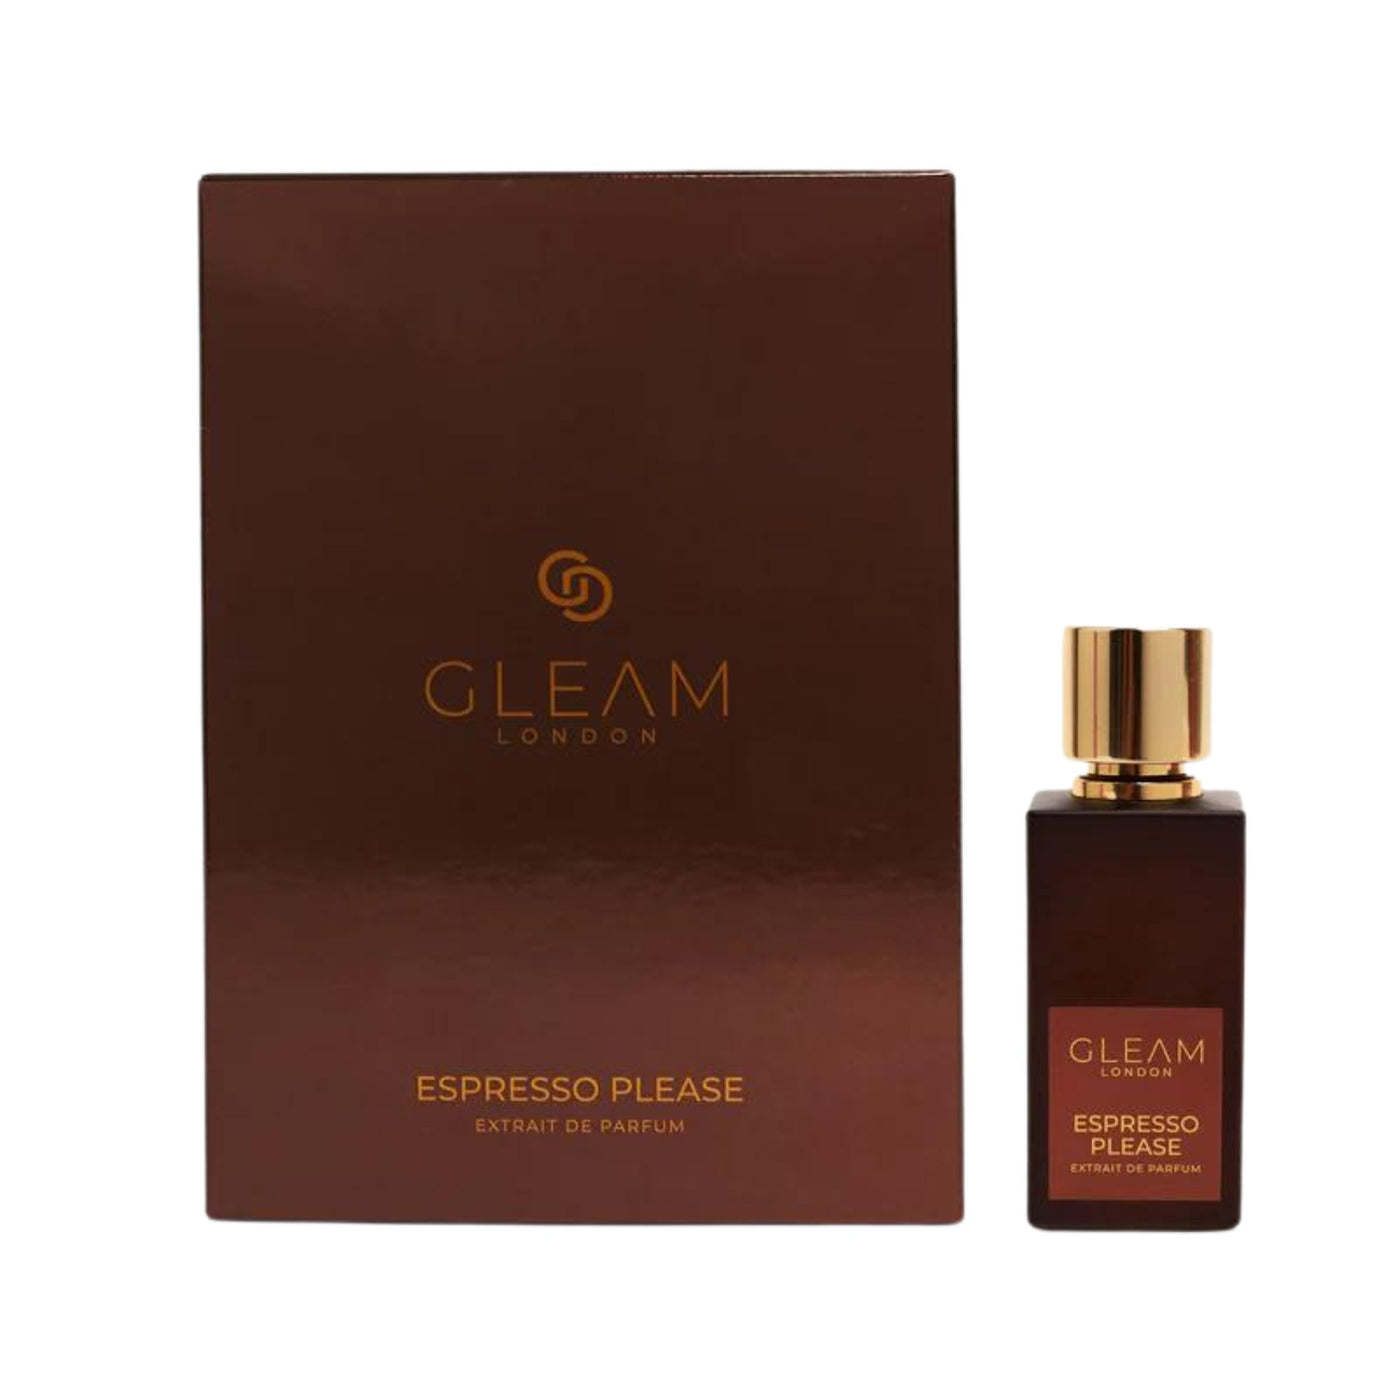 Perfume Gleam Espresso Please